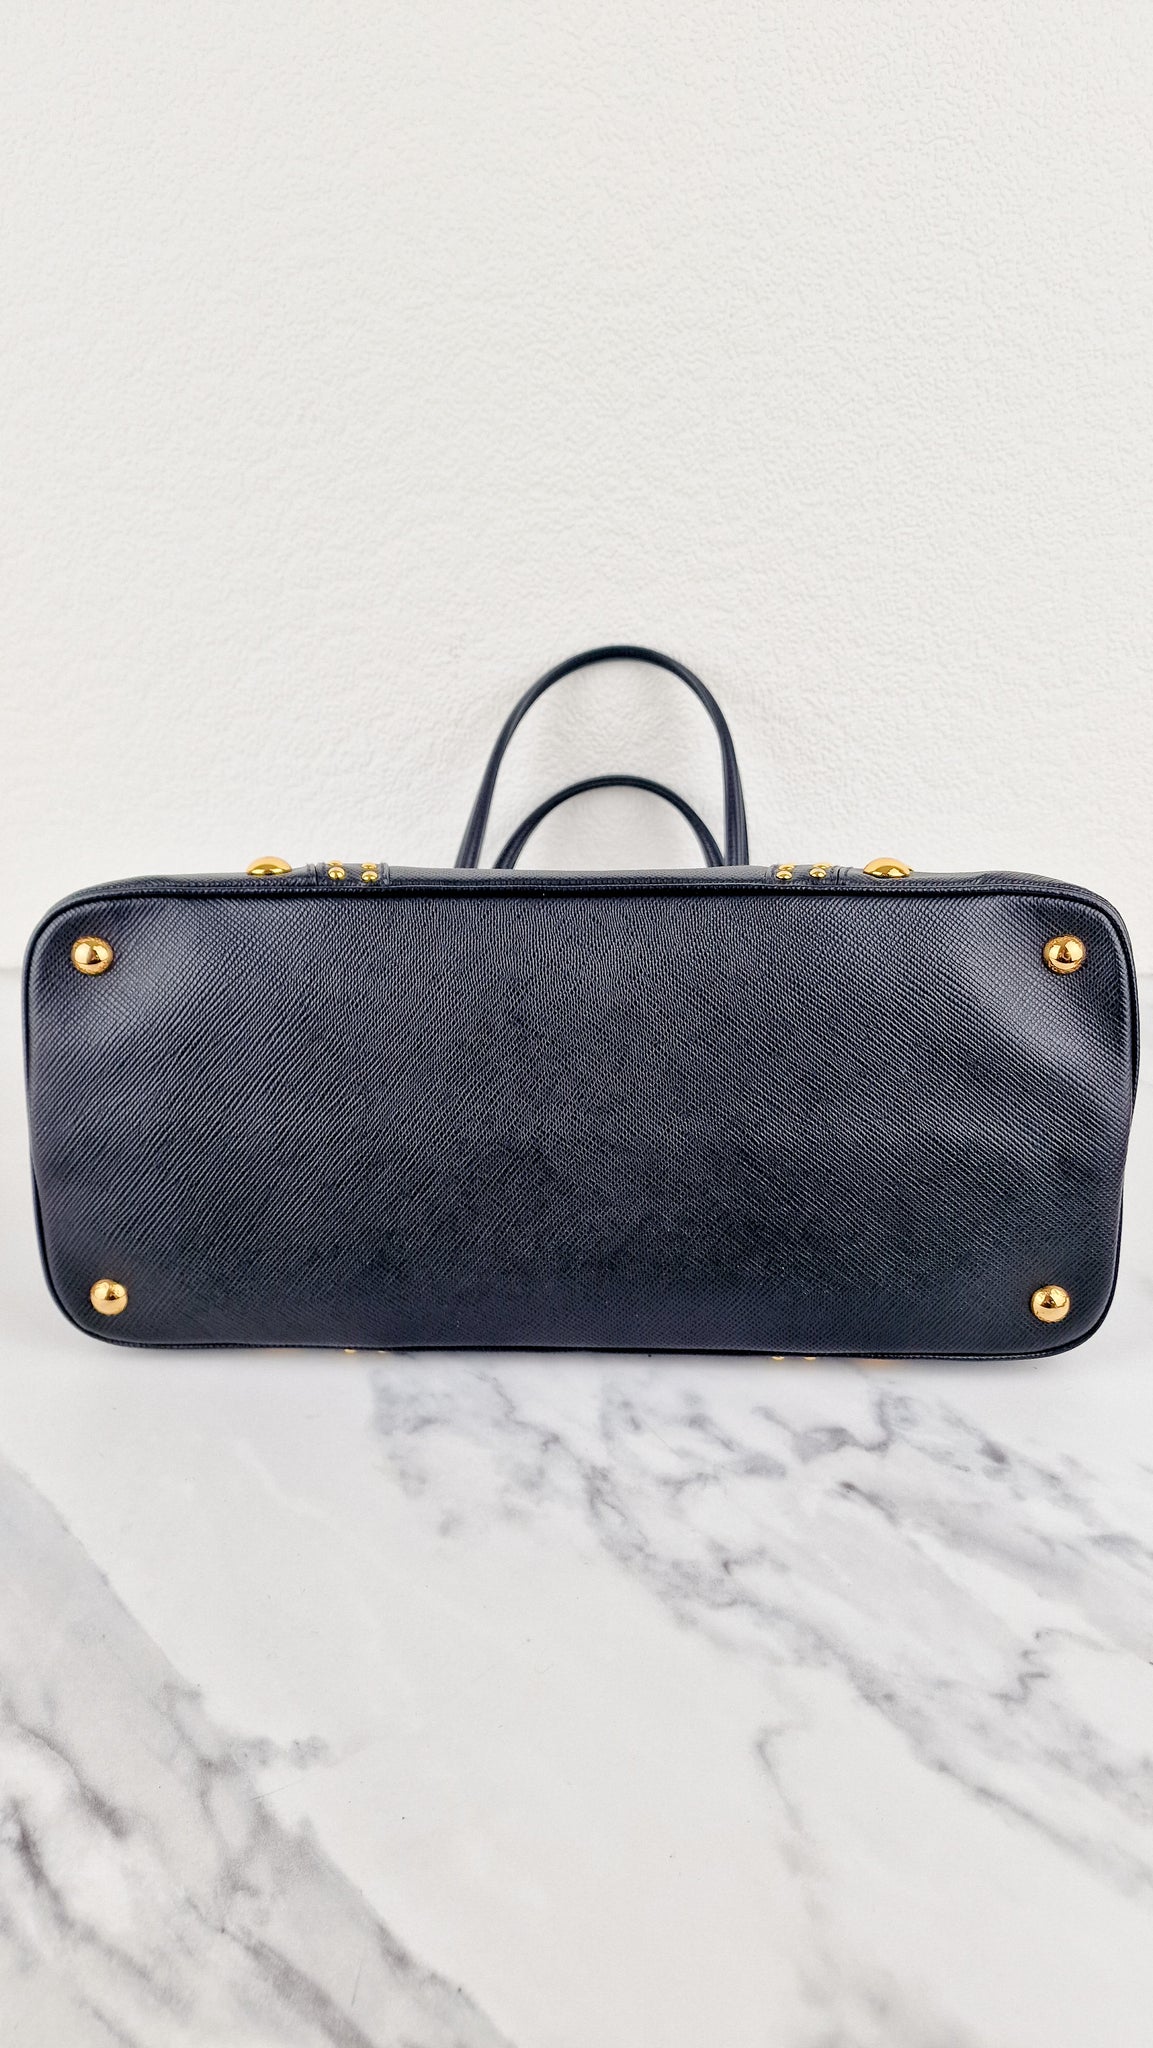 Prada Saffiano Cuir Handbag in Black Leather with Gold Studs - Handbag –  Essex Fashion House